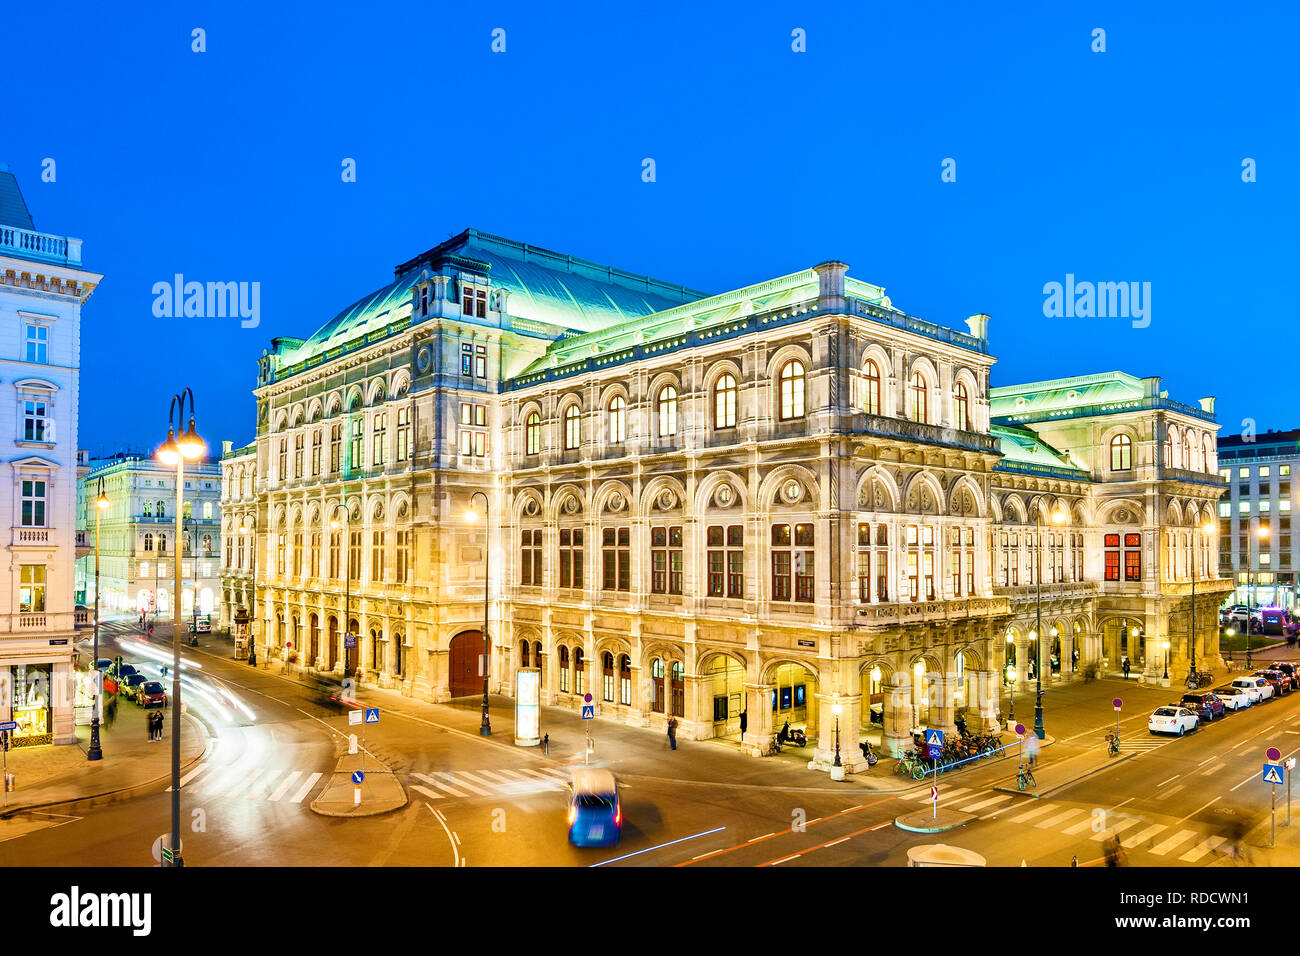 Maison de l'Opéra de Vienne, Wiener Staatsoper, Vienne, Autriche. Banque D'Images